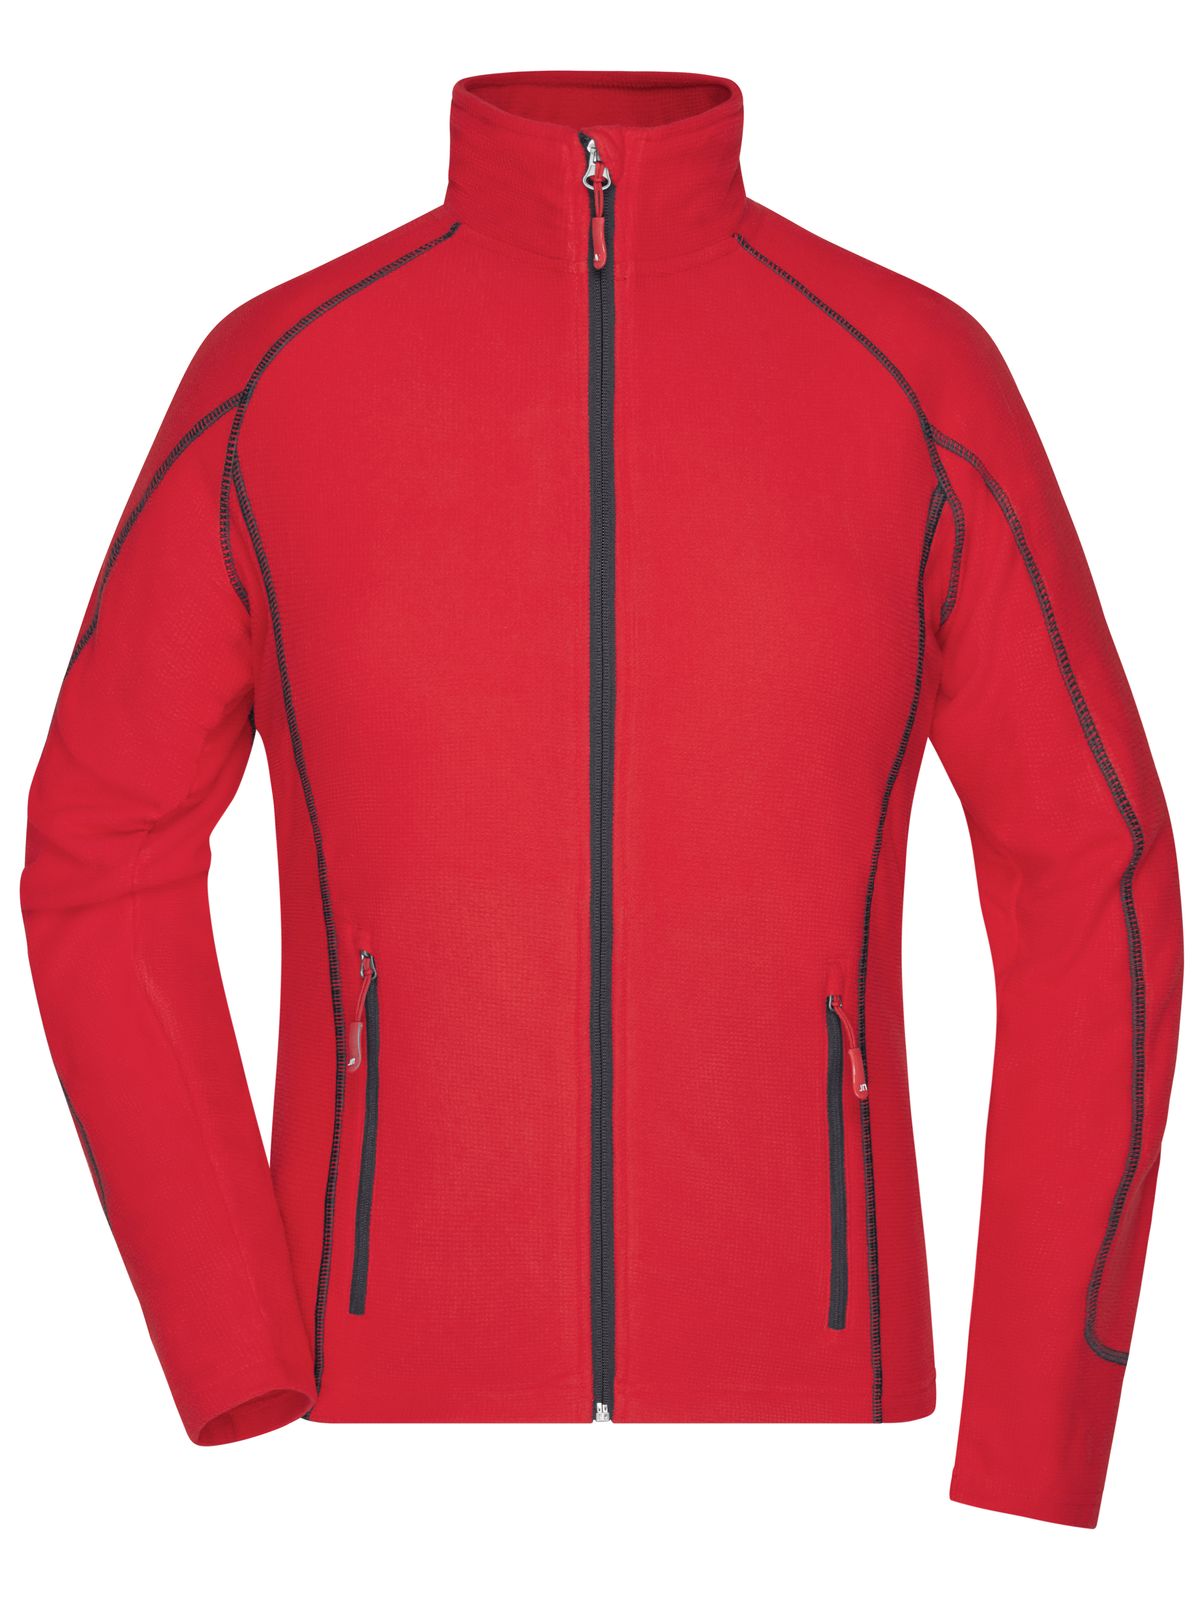 ladies-structure-fleece-jacket-red-carbon.webp